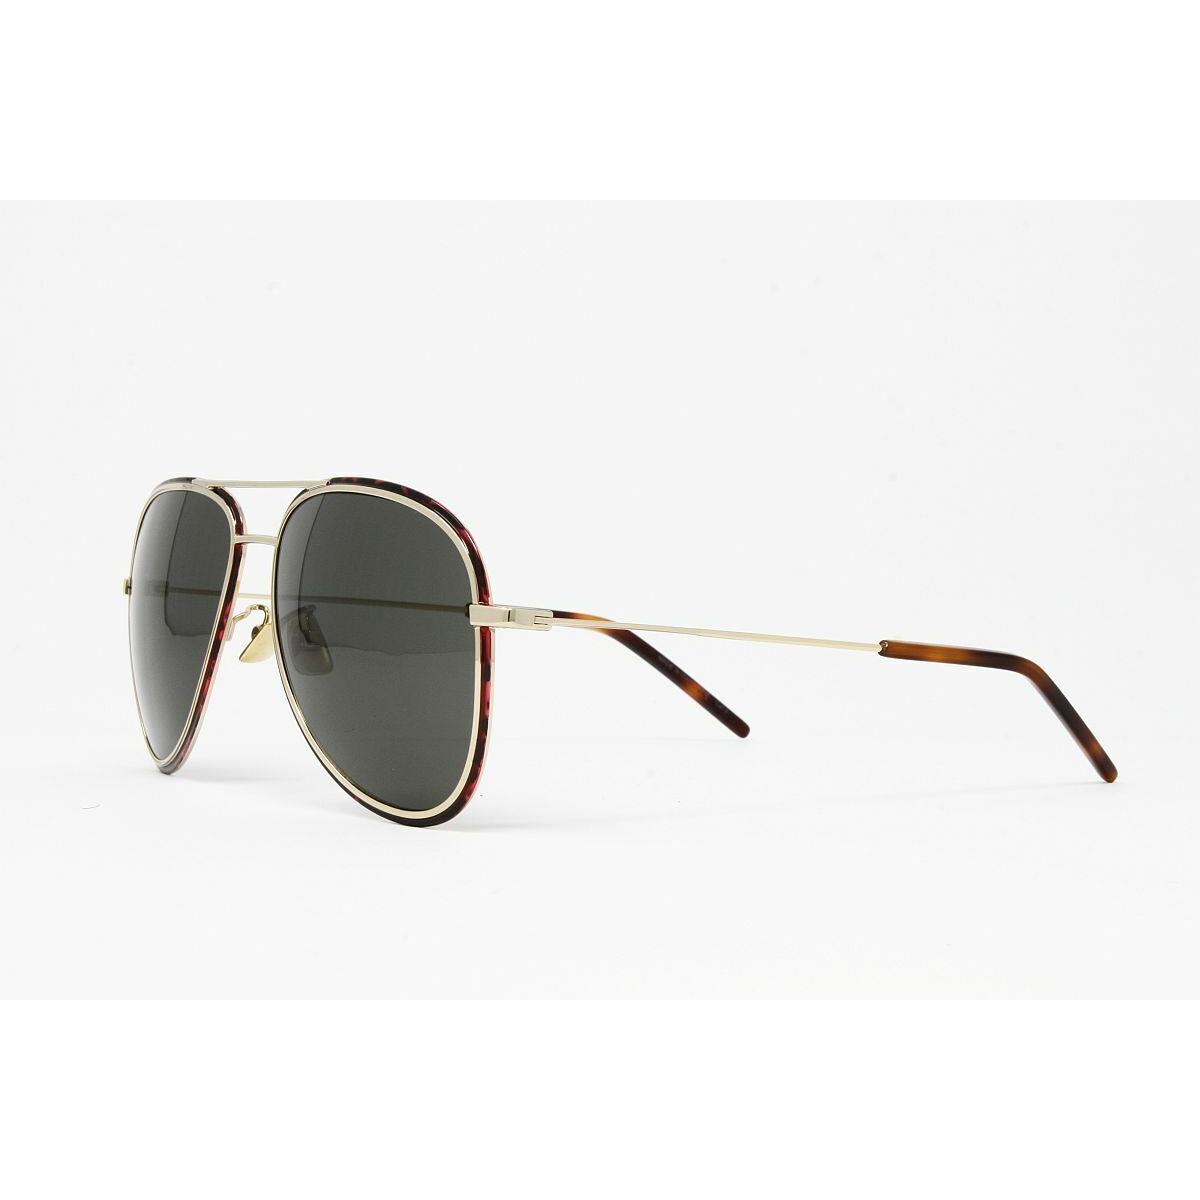 Yves Saint Laurent sunglasses  - Gold Frame, Gray Lens 2